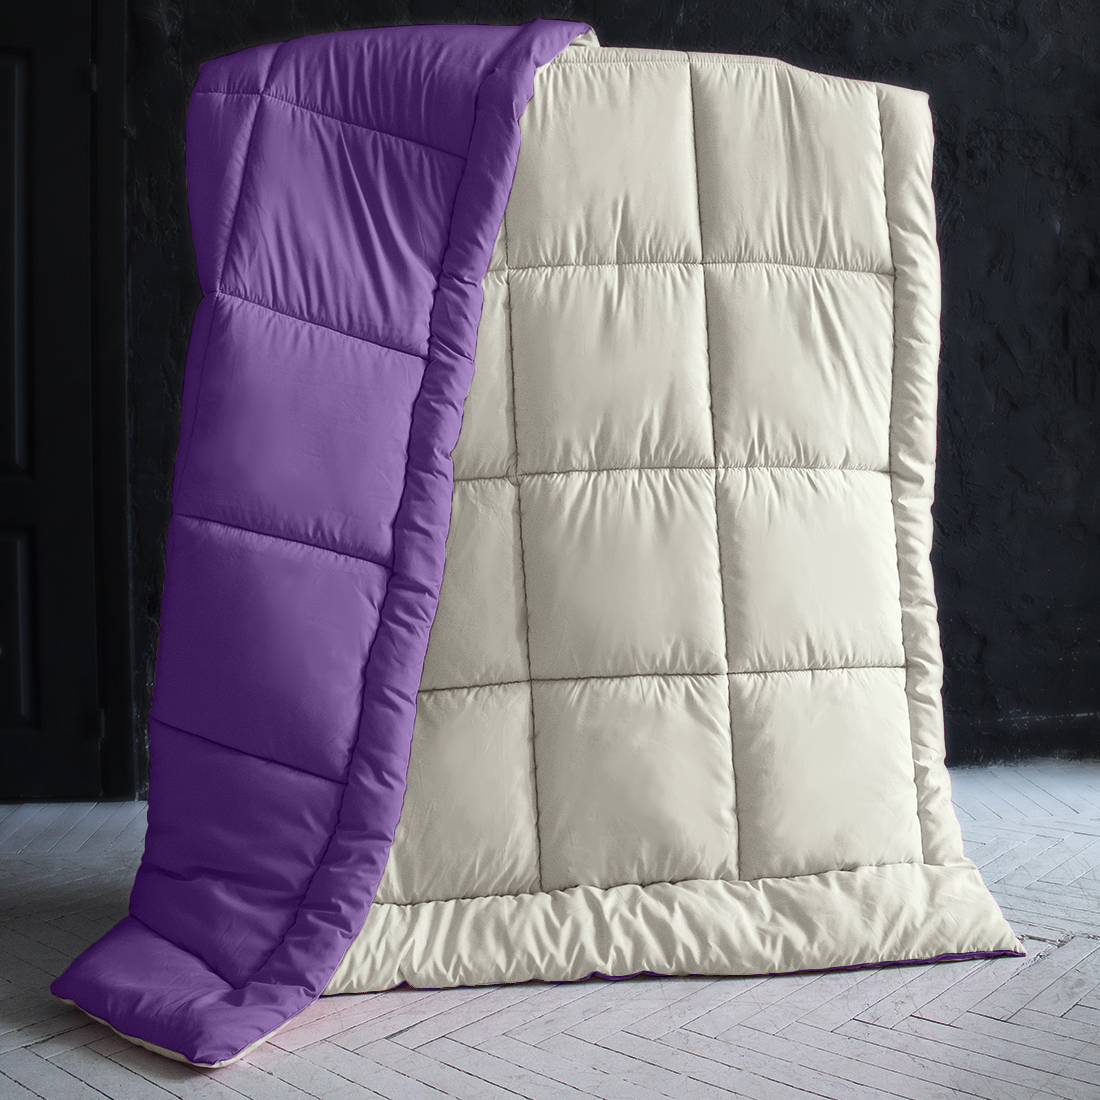 Одеяло MultiColor Цвет: Ванильный/Темно-Фиолетовый (155х215 см), размер 155х215 см pva410830 Одеяло MultiColor Цвет: Ванильный/Темно-Фиолетовый (155х215 см) - фото 1